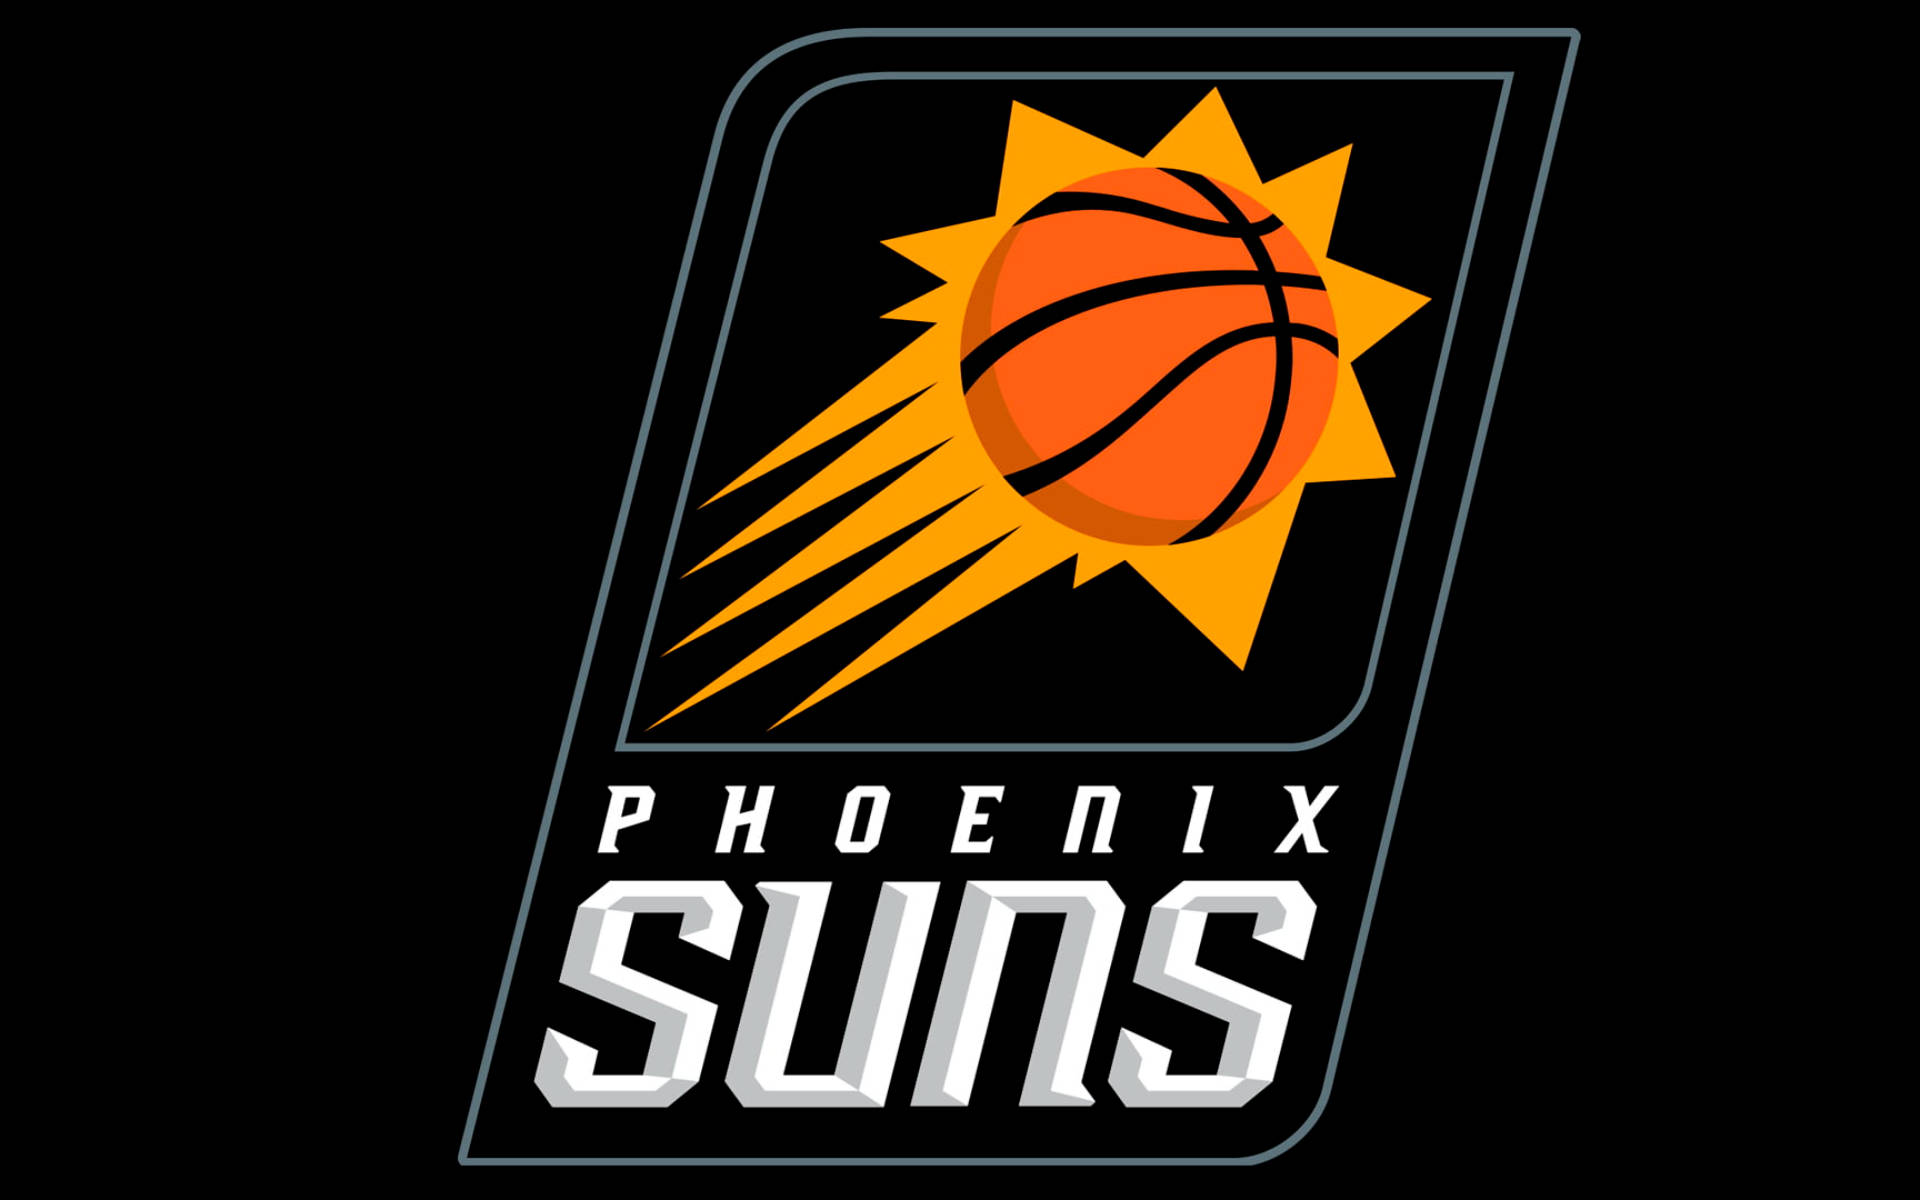 Phoenix Suns Wallpaper Images